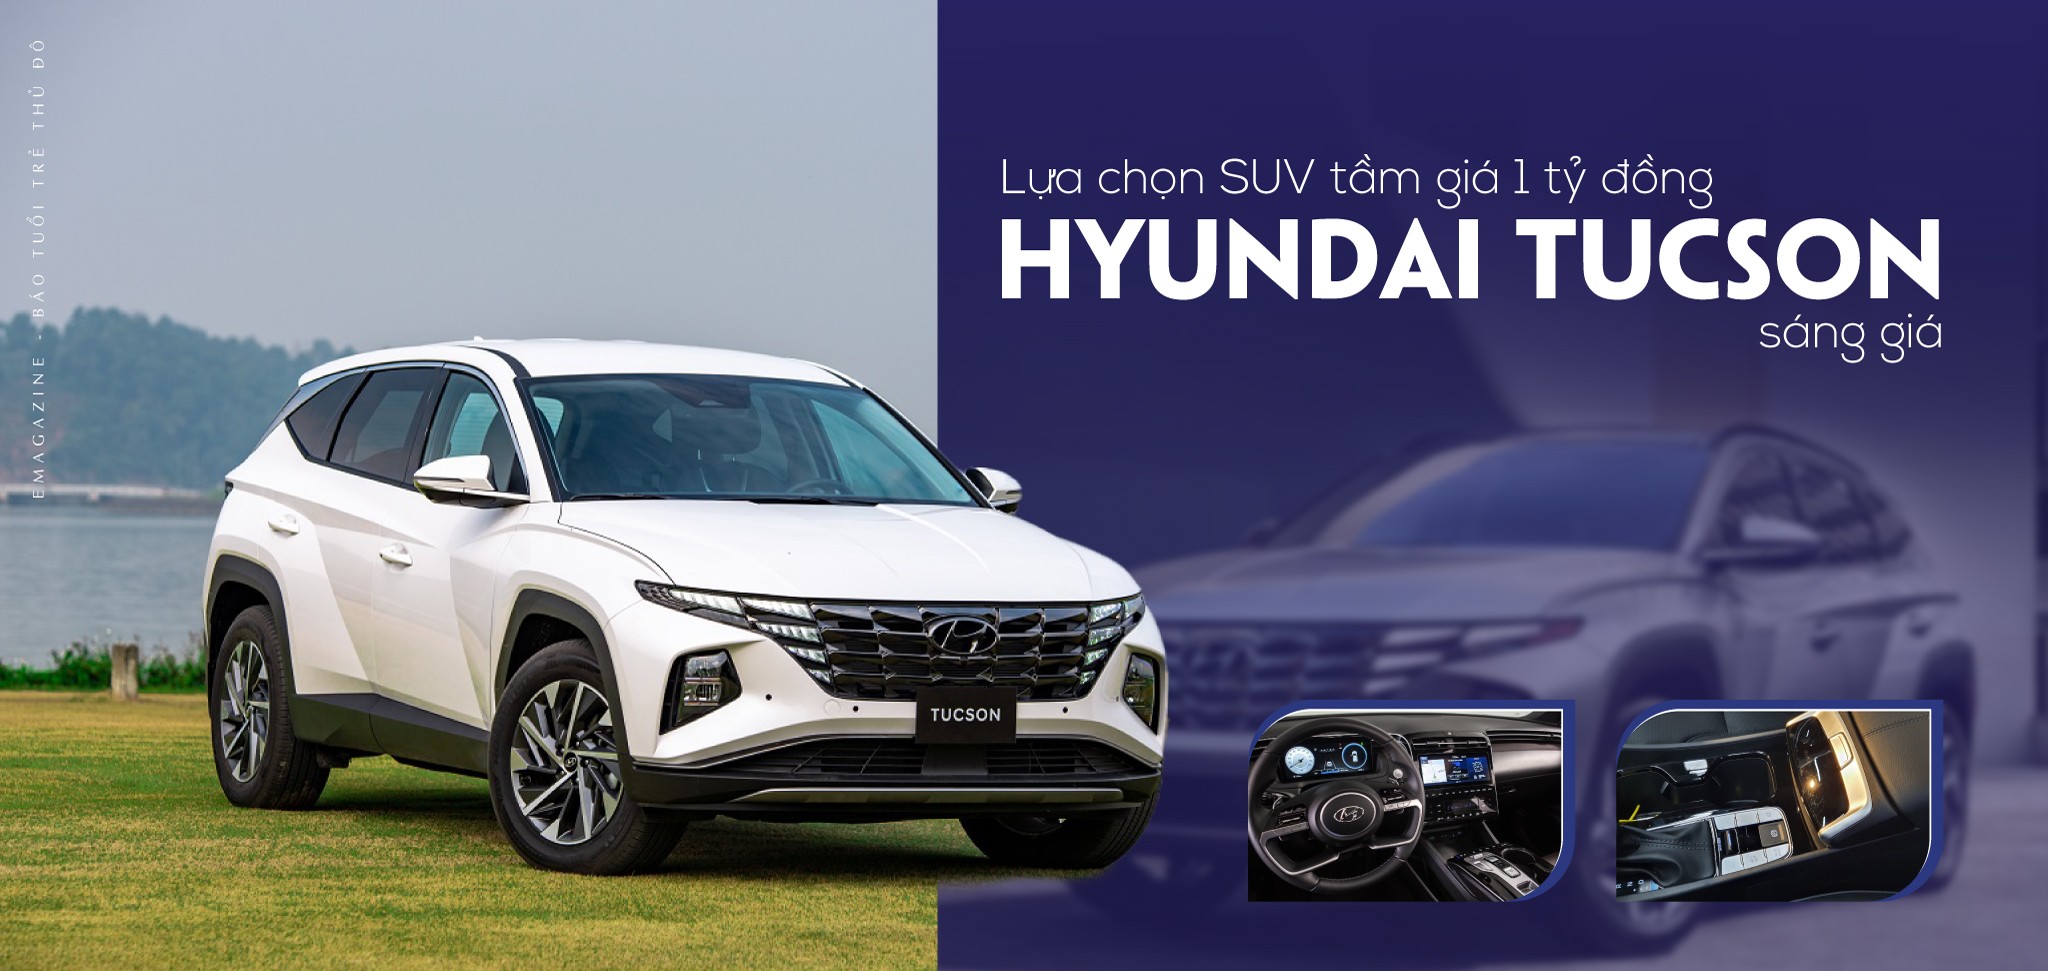 Lựa chọn SUV tầm giá 1 tỷ đồng: Hyundai Tucson sáng giá